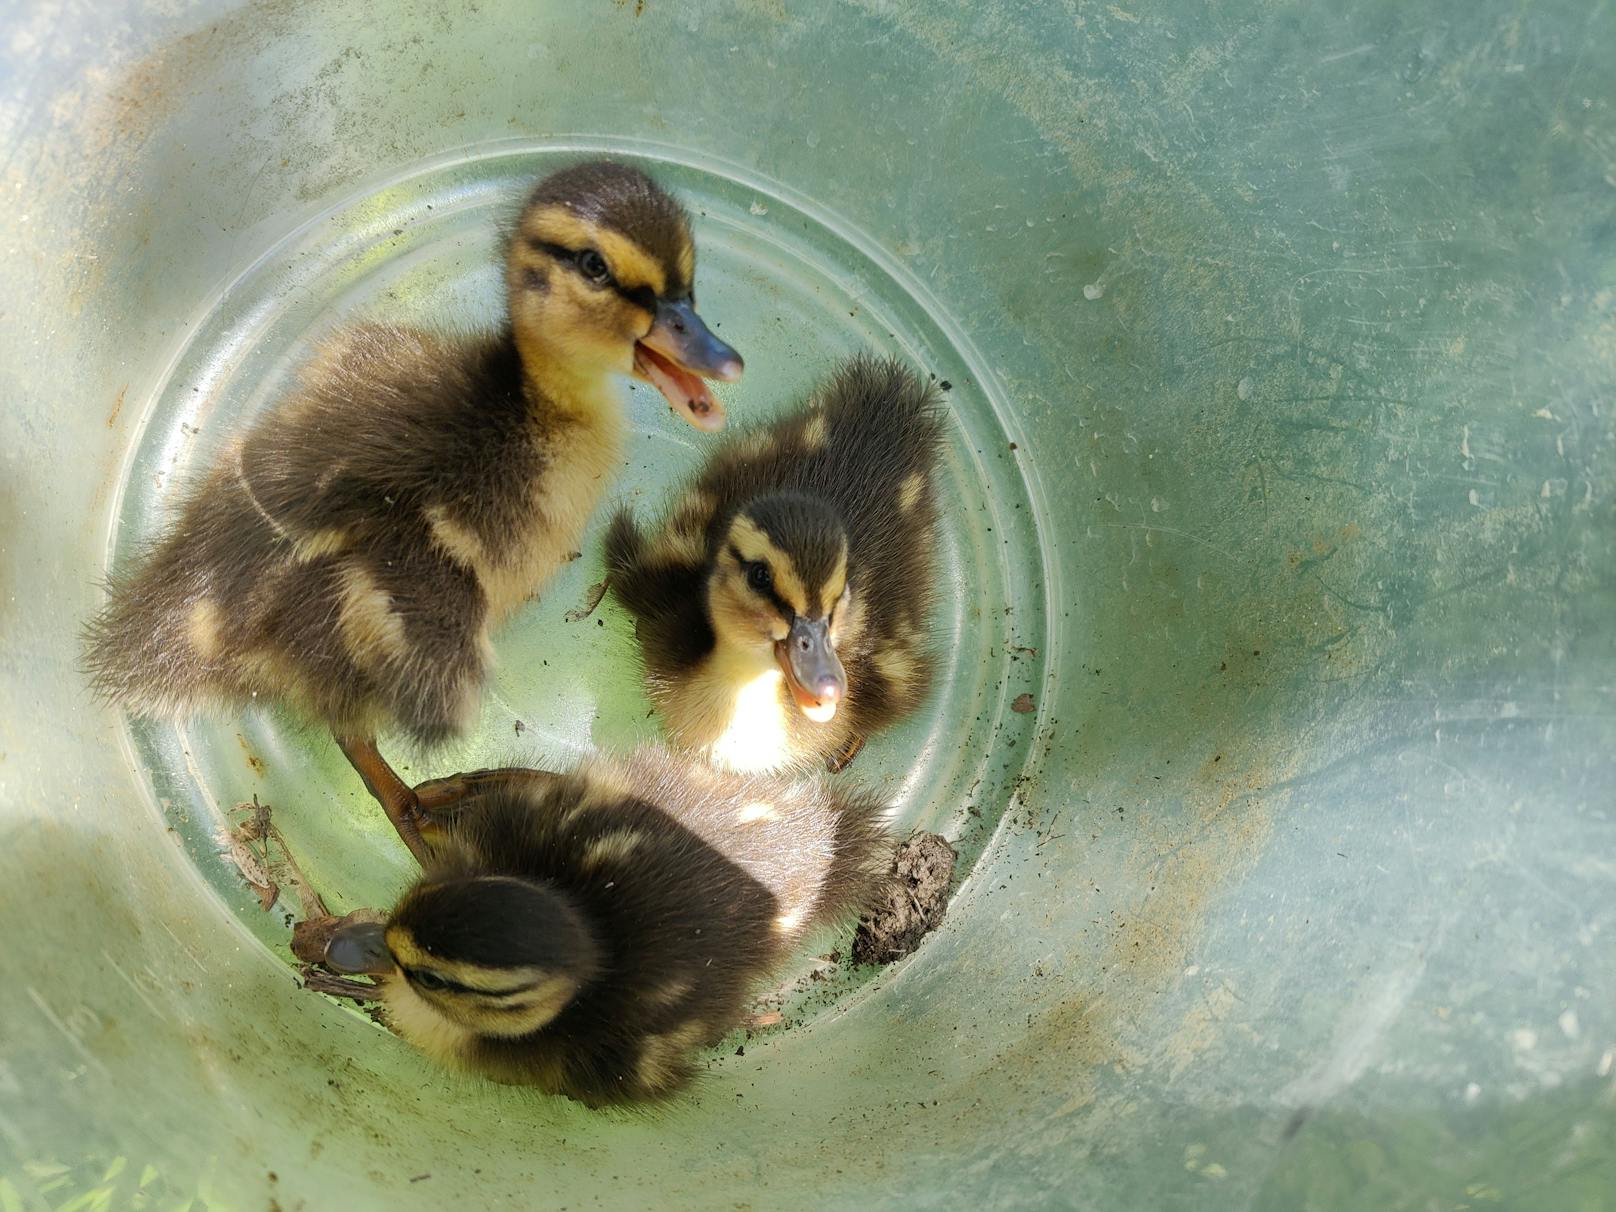 Entenfamilie plumpste in Abwasserschacht – gerettet